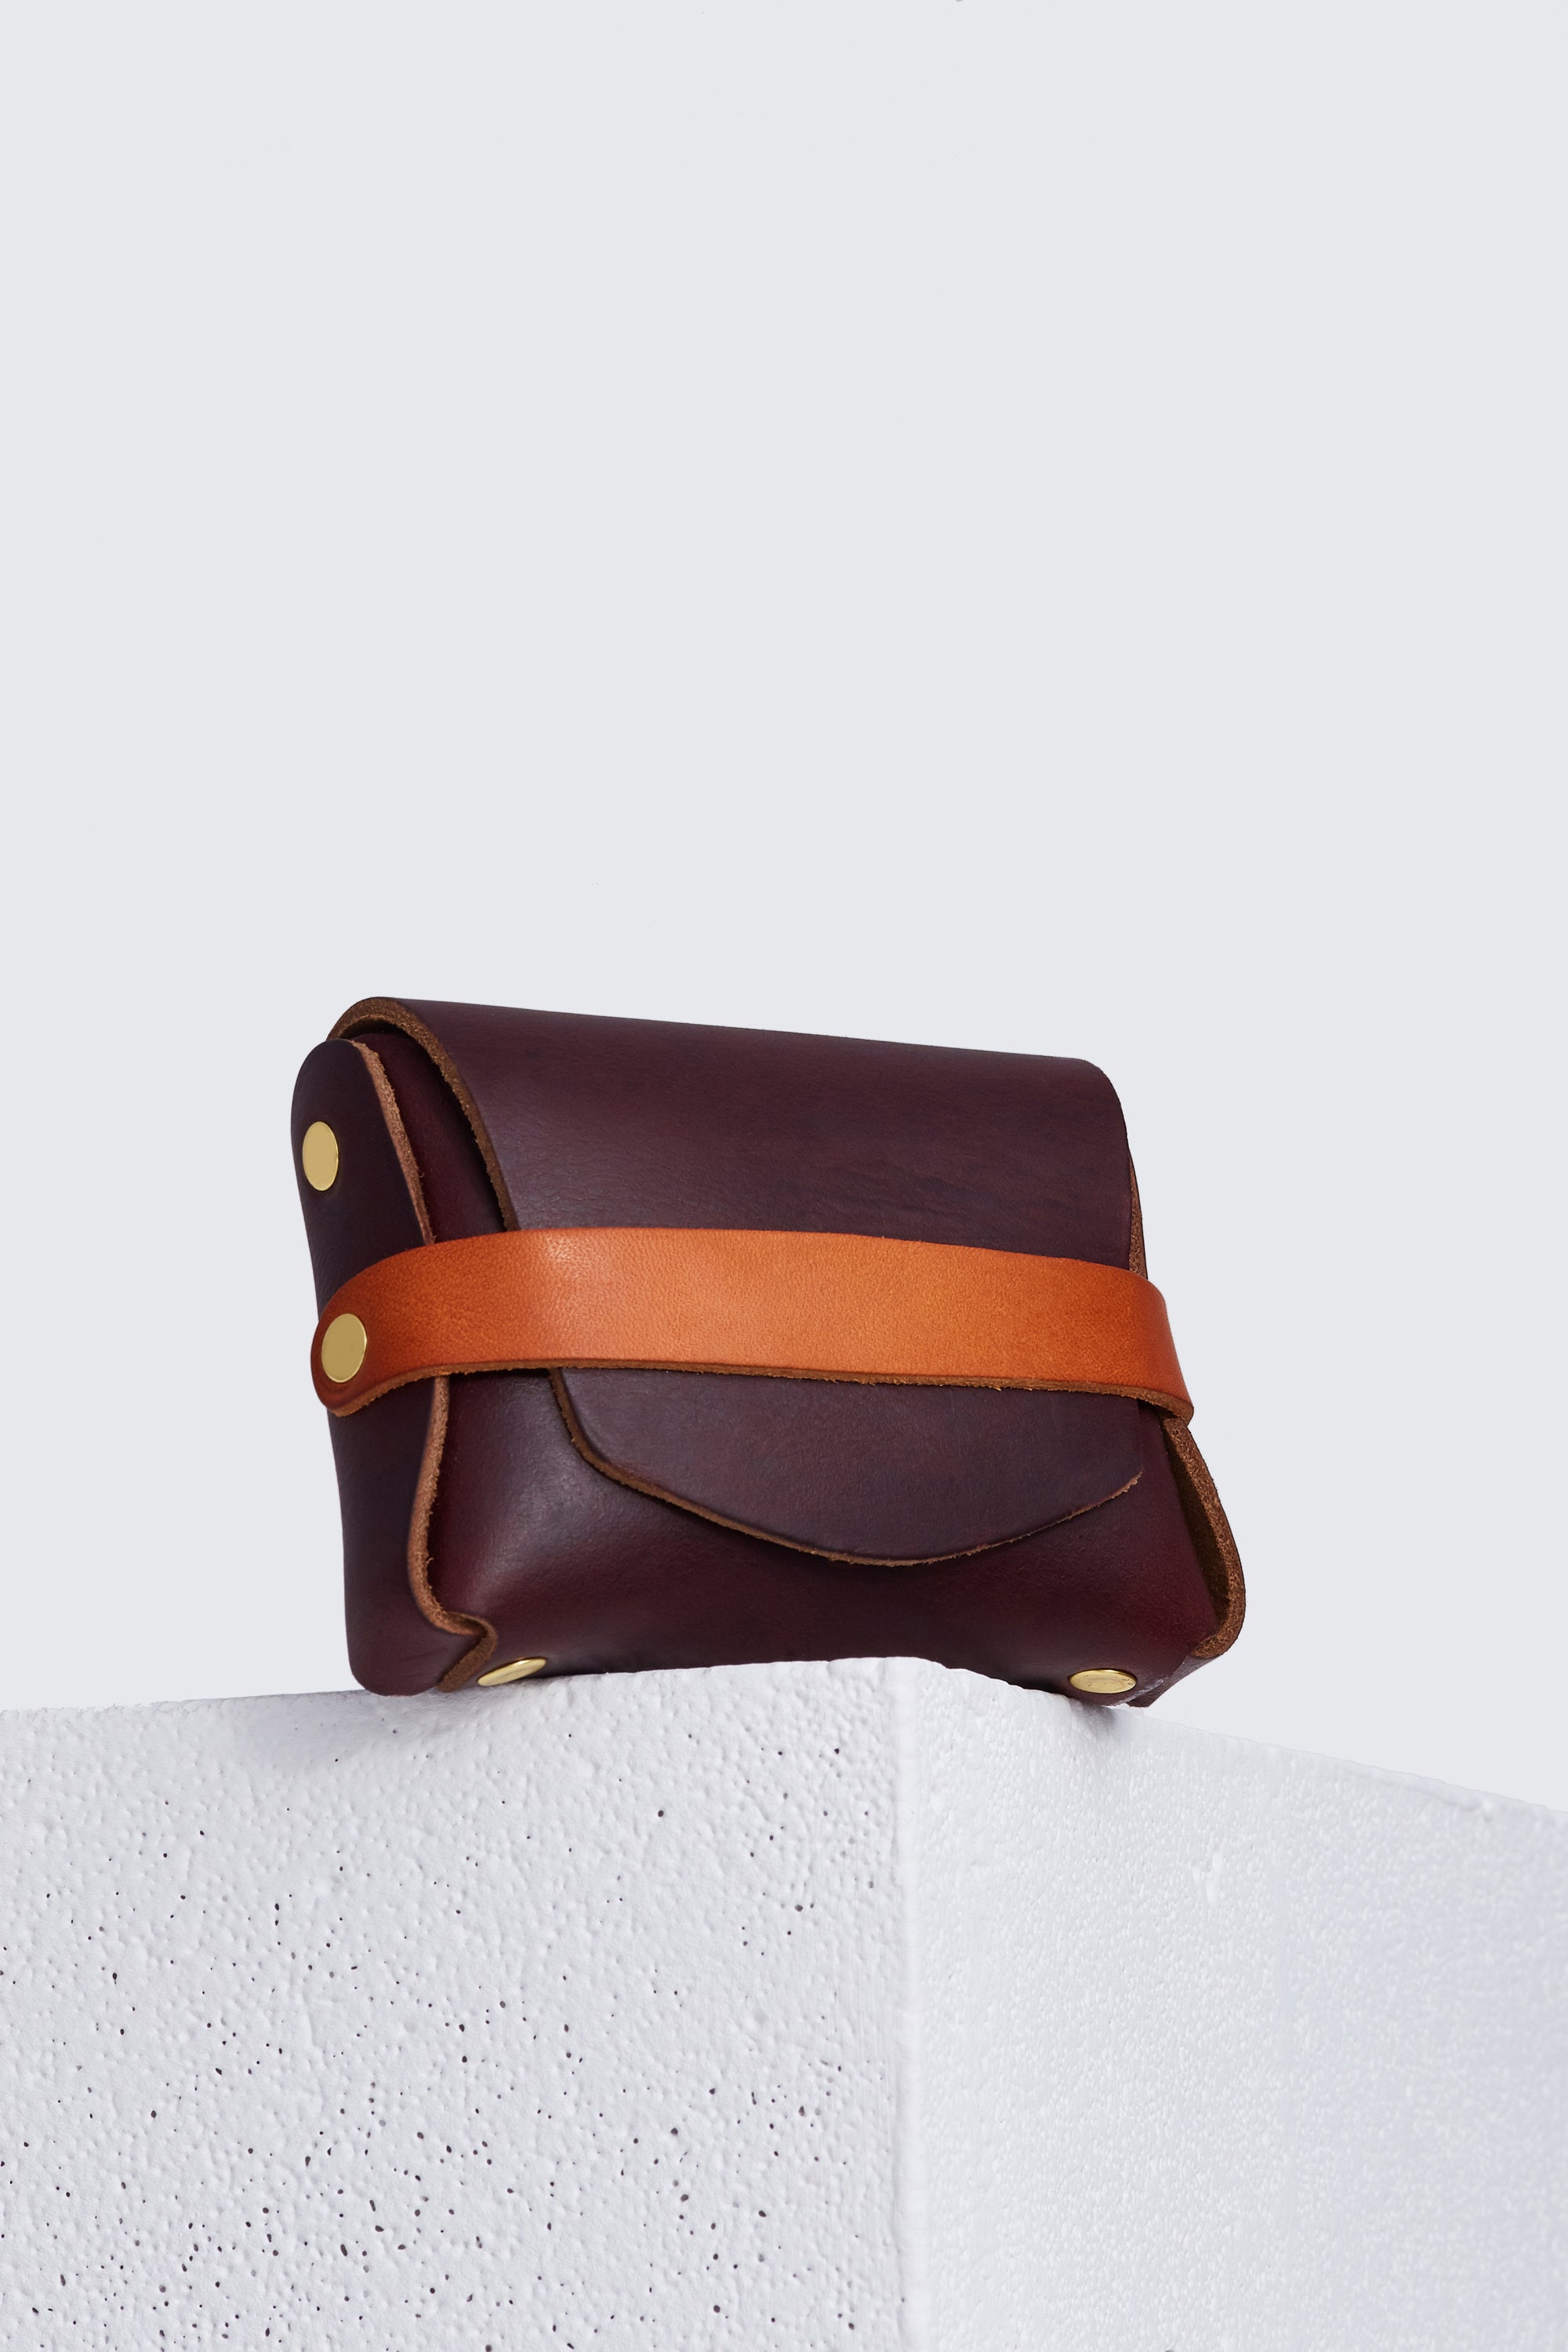 Spikes & Sparrow Genuine Leather Shoulder Bag Purse Brown Front Zip Pocket  | eBay